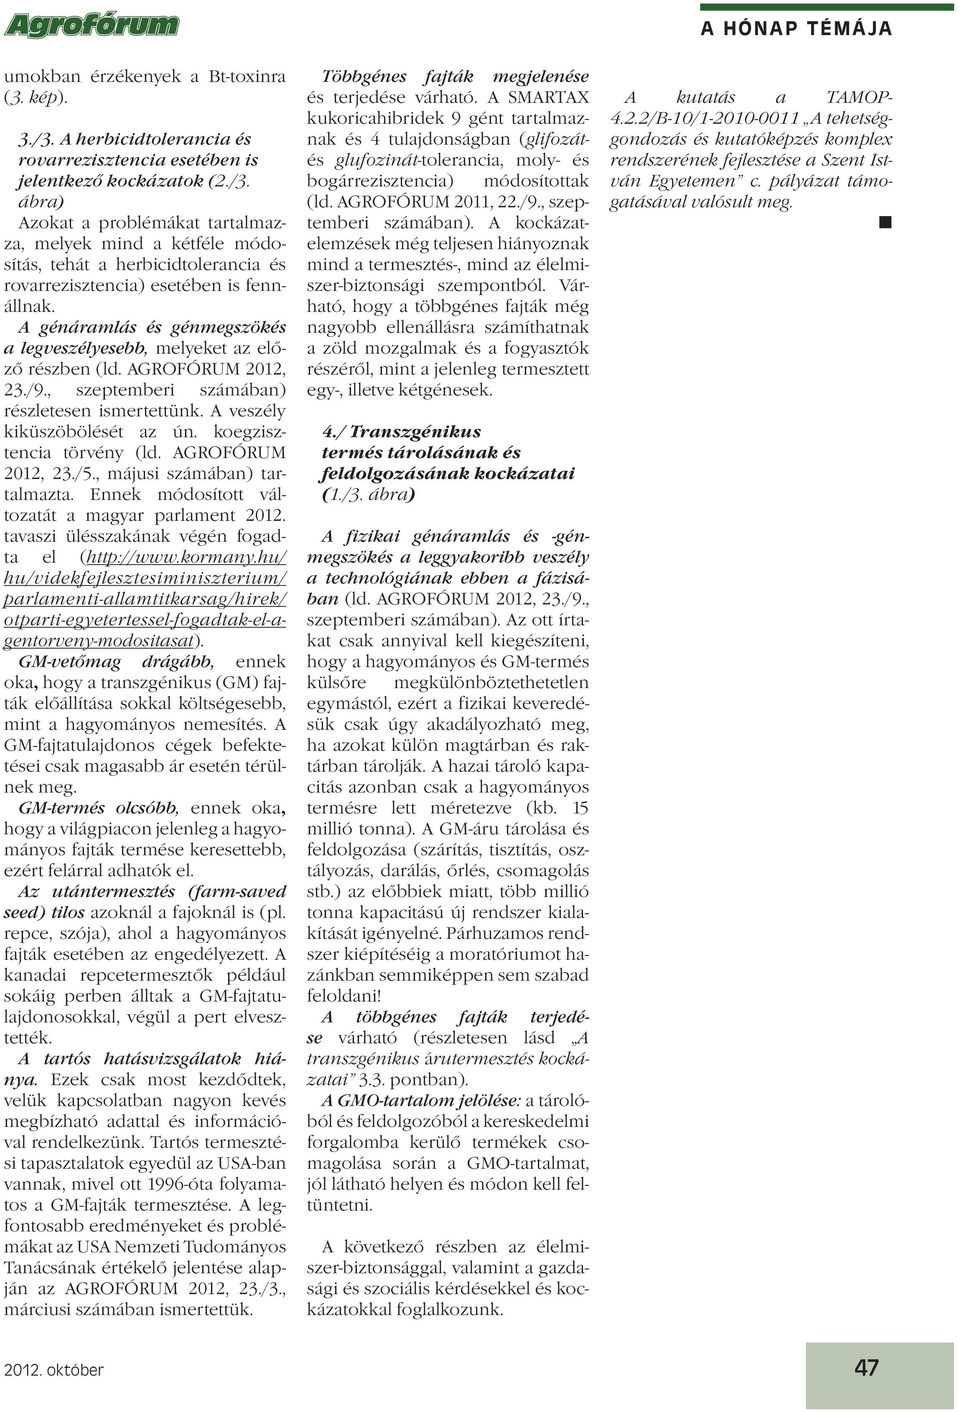 koegzisztencia törvény (ld. AGROFÓRUM 2012, 23./5., májusi számában) tartalmazta. Ennek módosított változatát a magyar parlament 2012. tavaszi ülésszakának végén fogadta el (http://www.kormany.